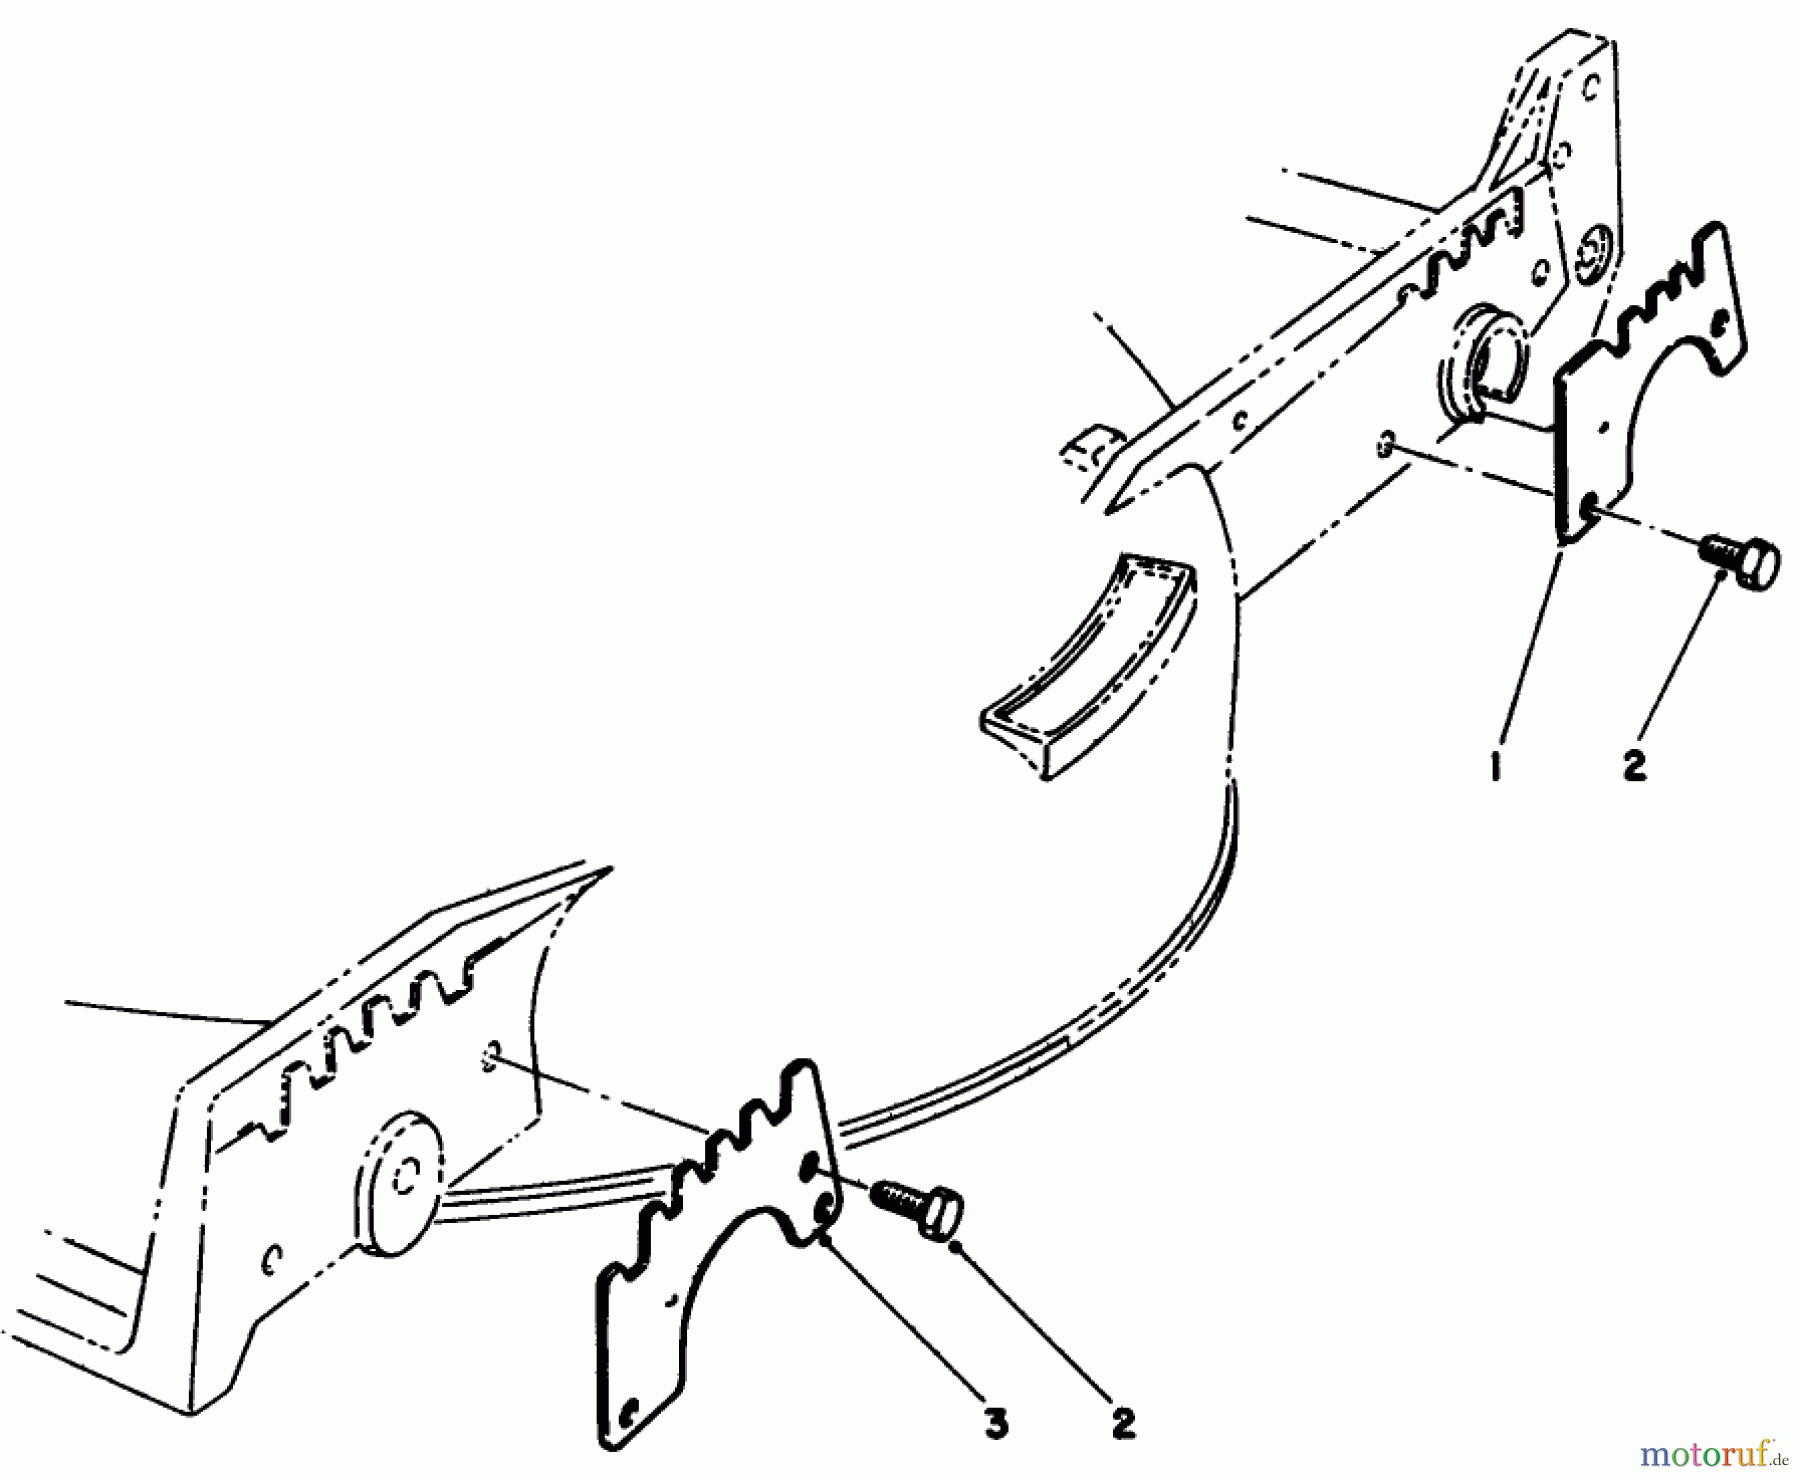  Toro Neu Mowers, Walk-Behind Seite 1 20677 - Toro Lawnmower, 1990 (0000001-0002101) WEAR PLATE MODEL NO. 49-4080 (OPTIONAL)